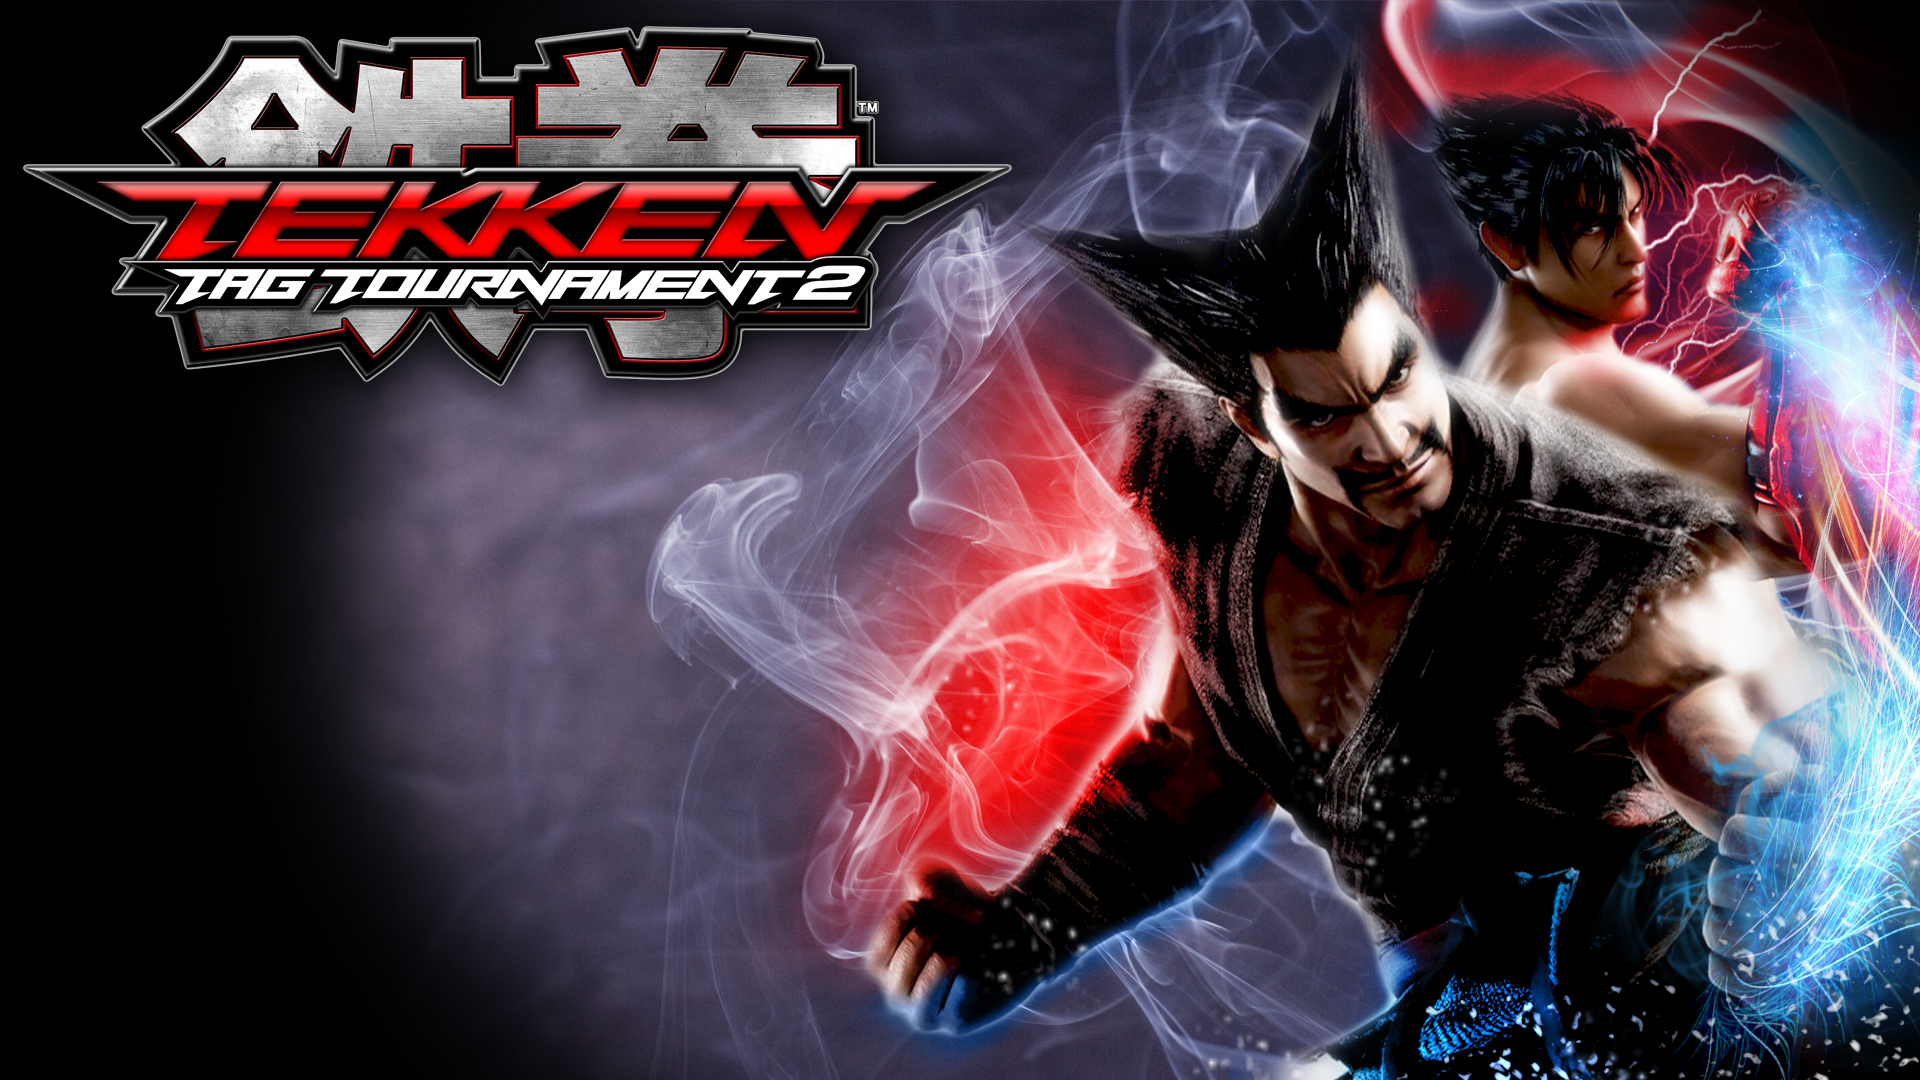 tekken 2 game download